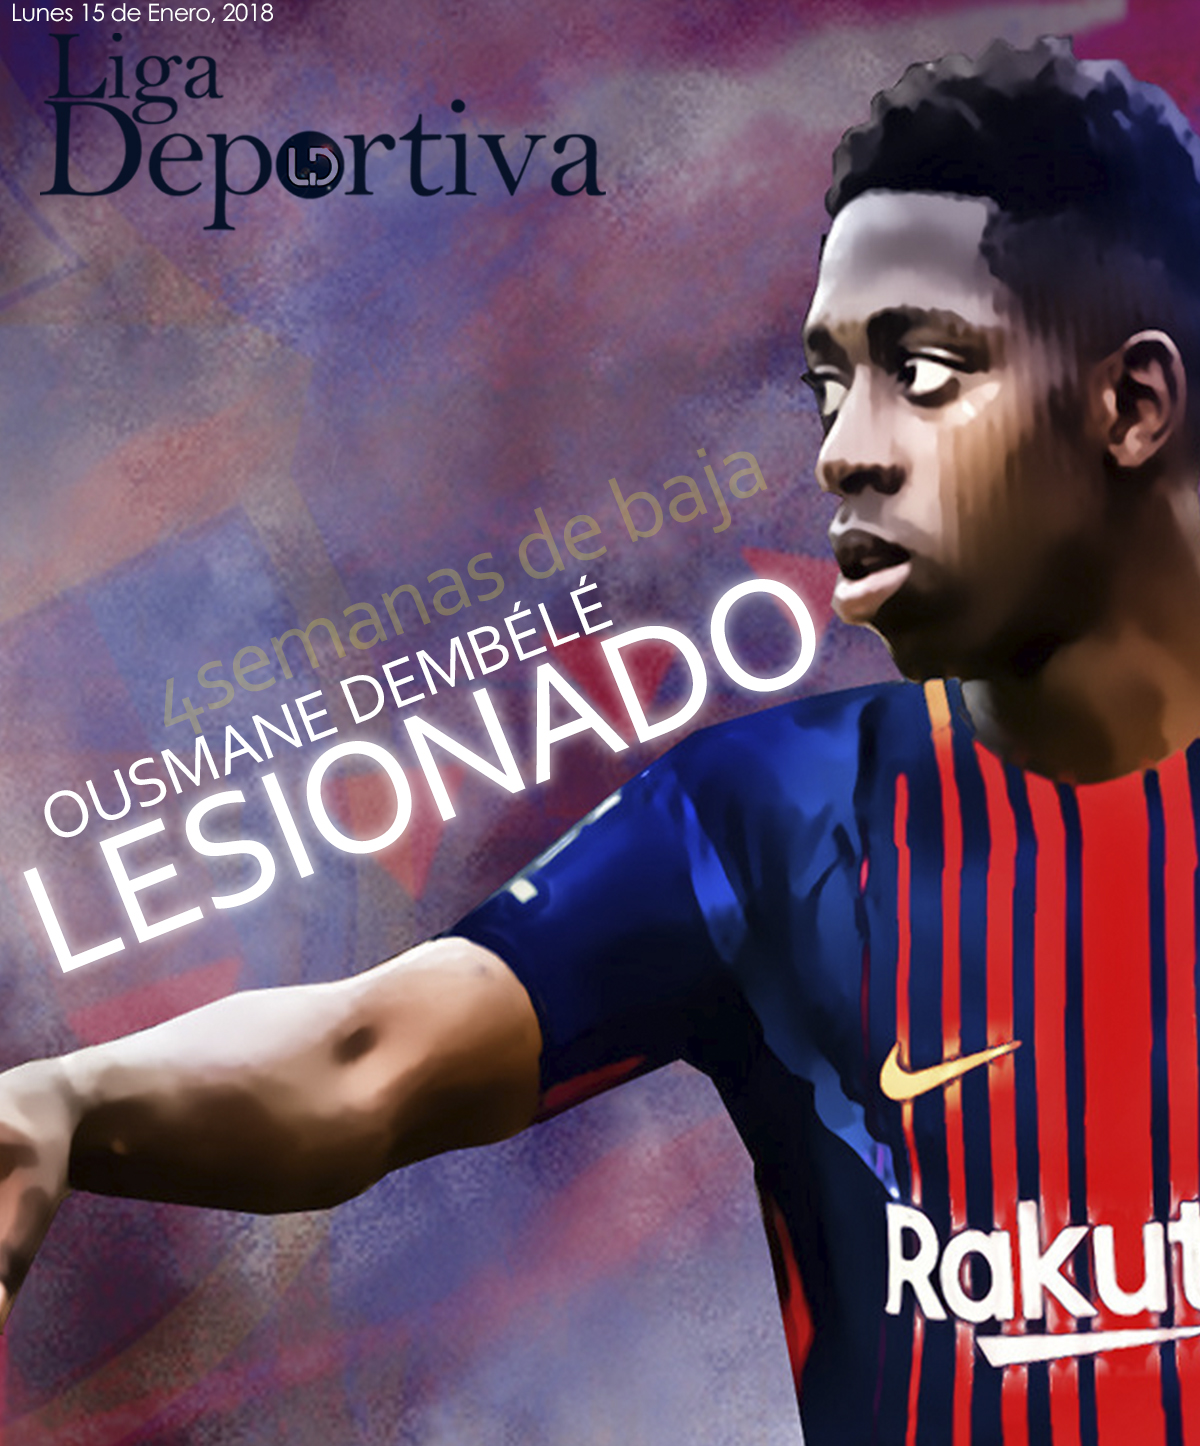 ¡LESIONADO! Ousmane Dembélé estará 4 semanas fuera del FC Barcelona